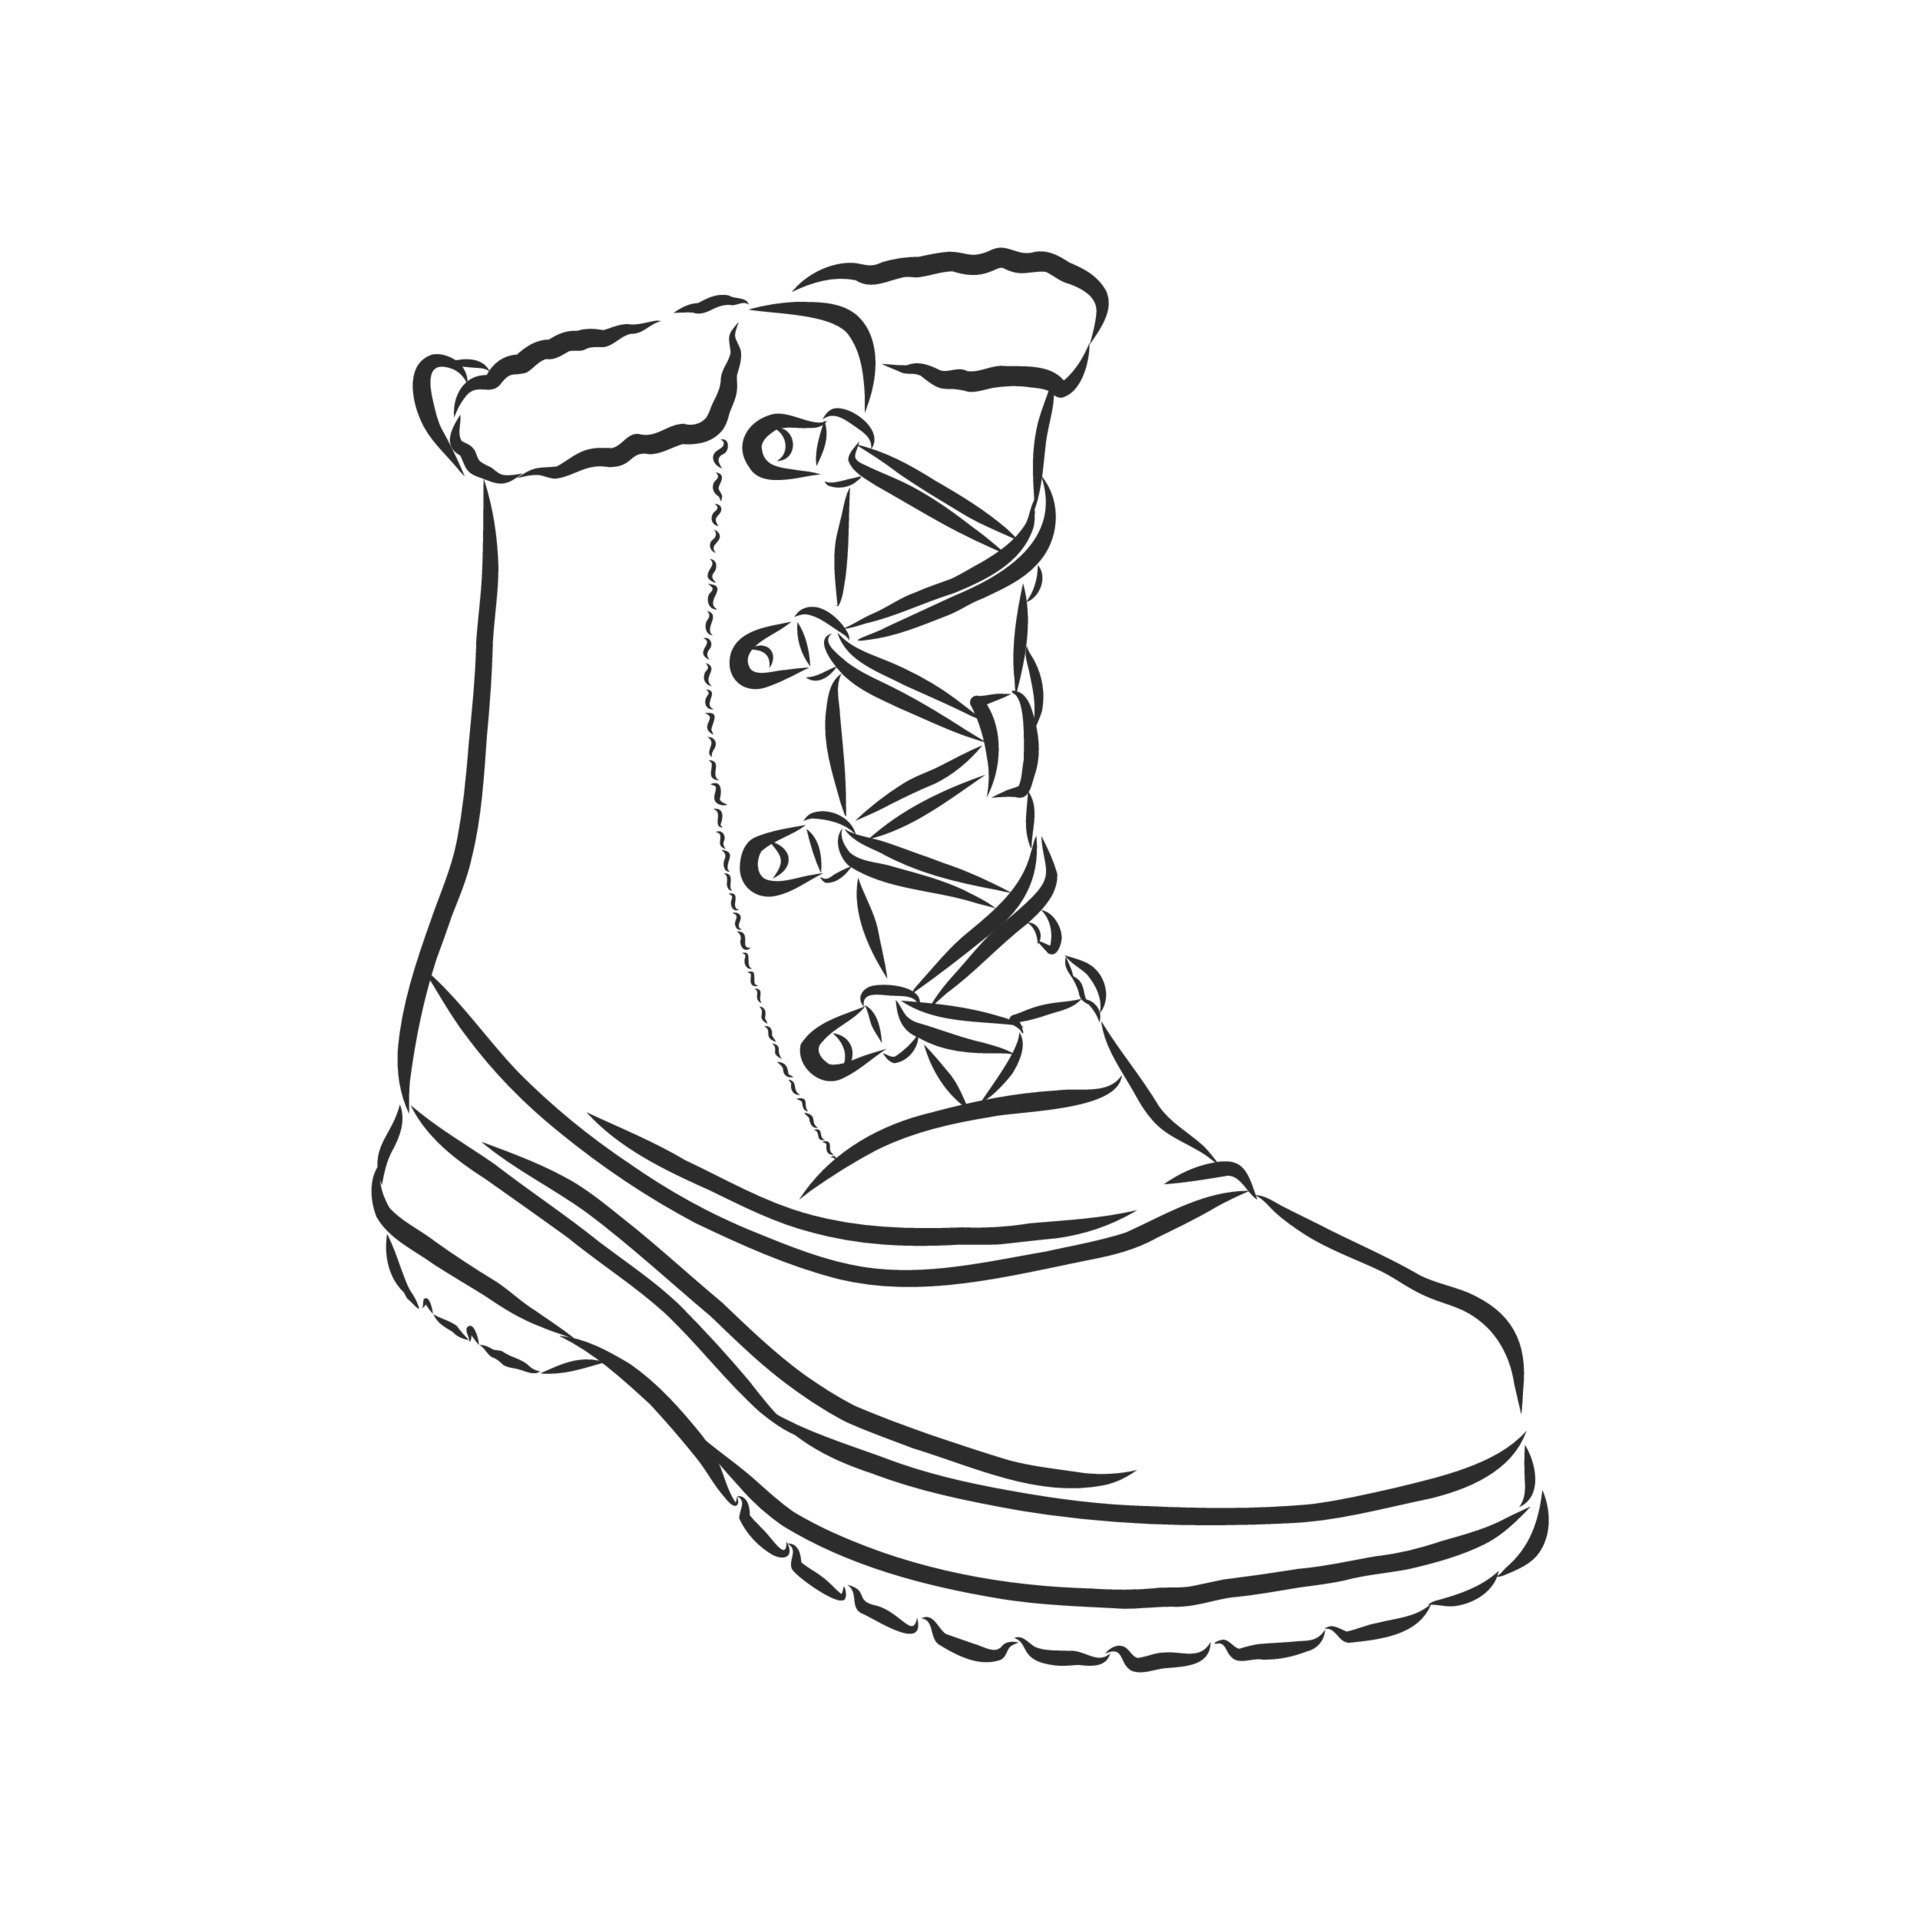 boots vector sketch 7652895 Vector Art at Vecteezy